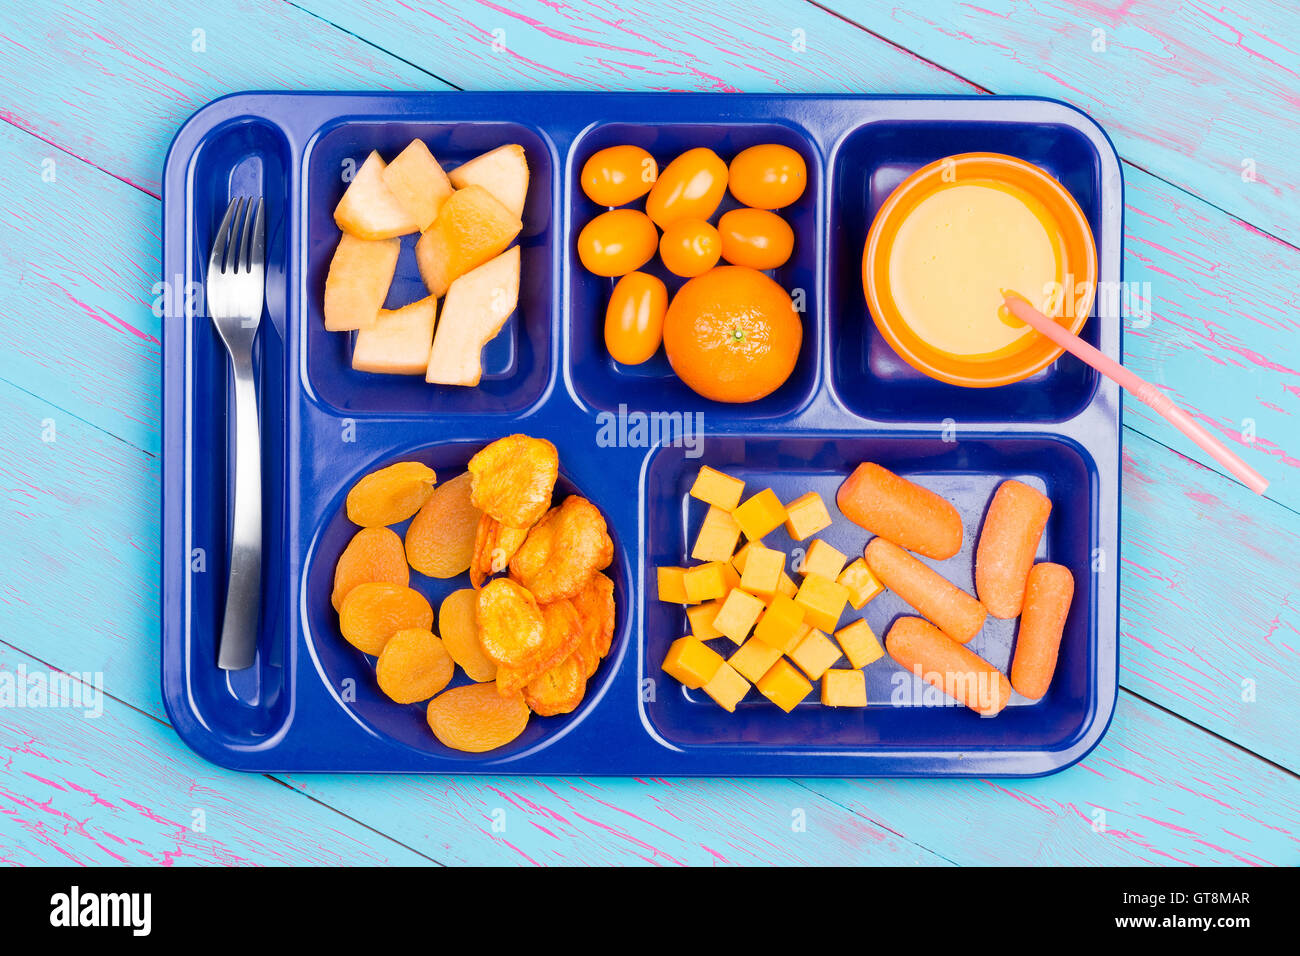 Un assortiment de fruits frais et secs coupés en petits morceaux et le jus d'orange en couleurs sur le plateau en plastique bleu avec fourche en acier inoxydable o Banque D'Images